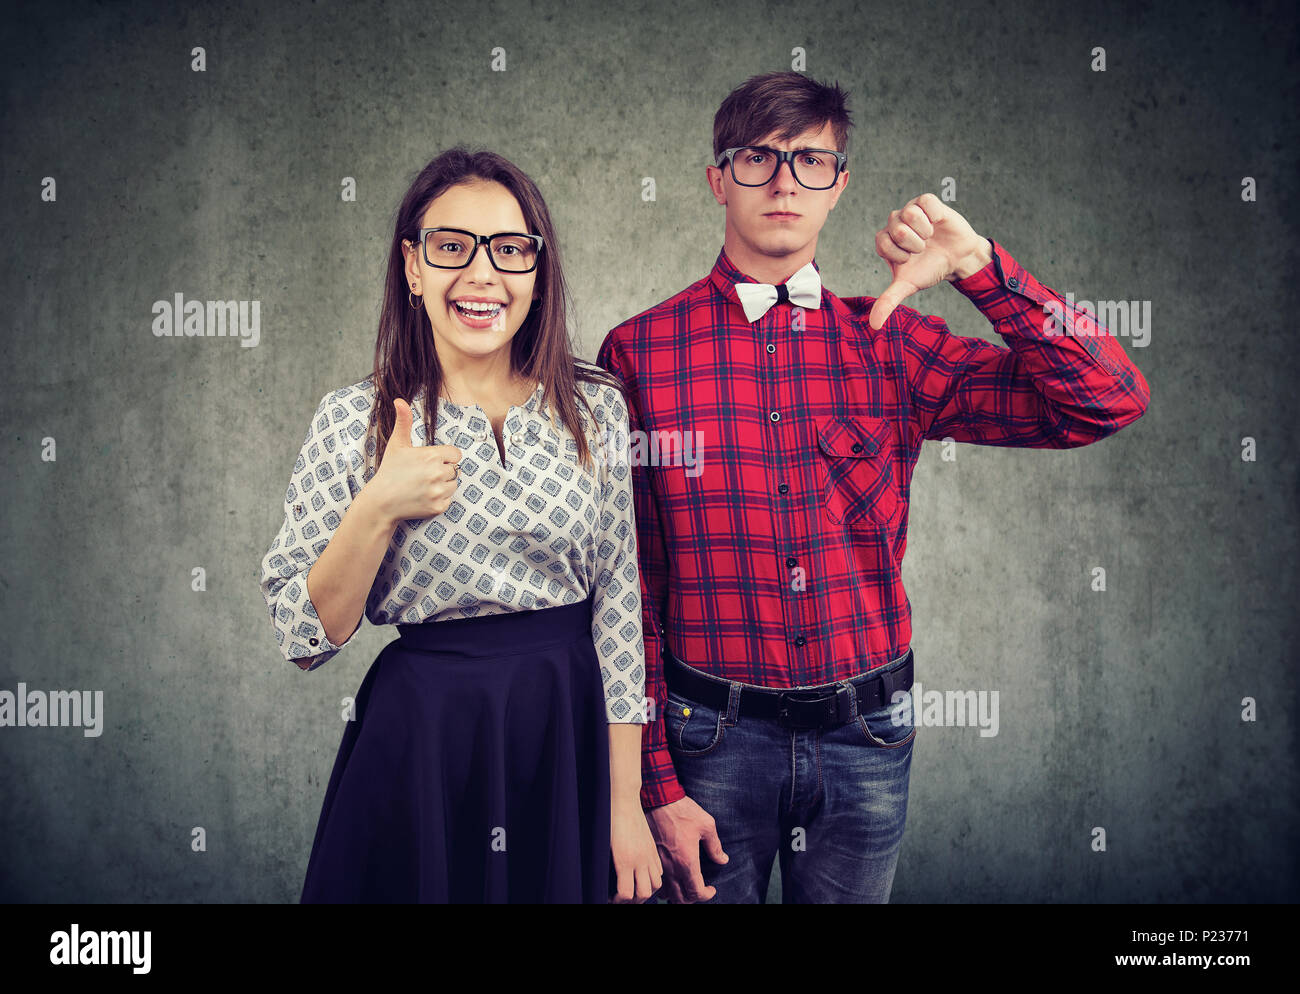 Jeune homme élégant avec le pouce vers le bas debout avec optimiste girl showing thumb up looking at camera. Banque D'Images